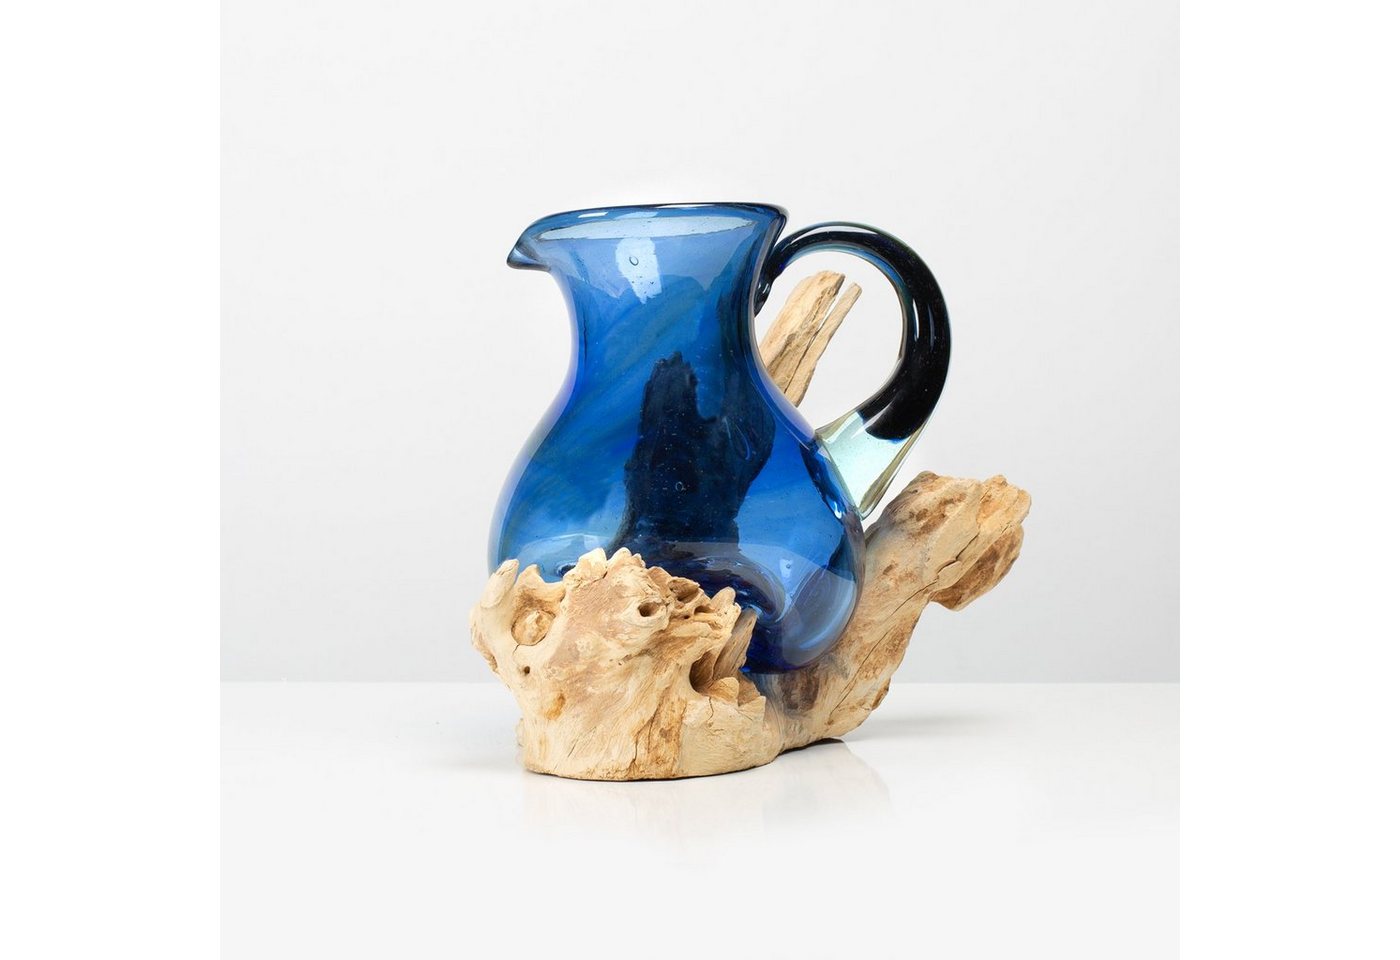 Rikmani Karaffe VIA Schmelzkaraffe auf Holzpodest - Designer Vase aus Glas mundgeblasen auf Holzwurzel Blumenvase Wasserkaraffe Schmelzvase von Rikmani